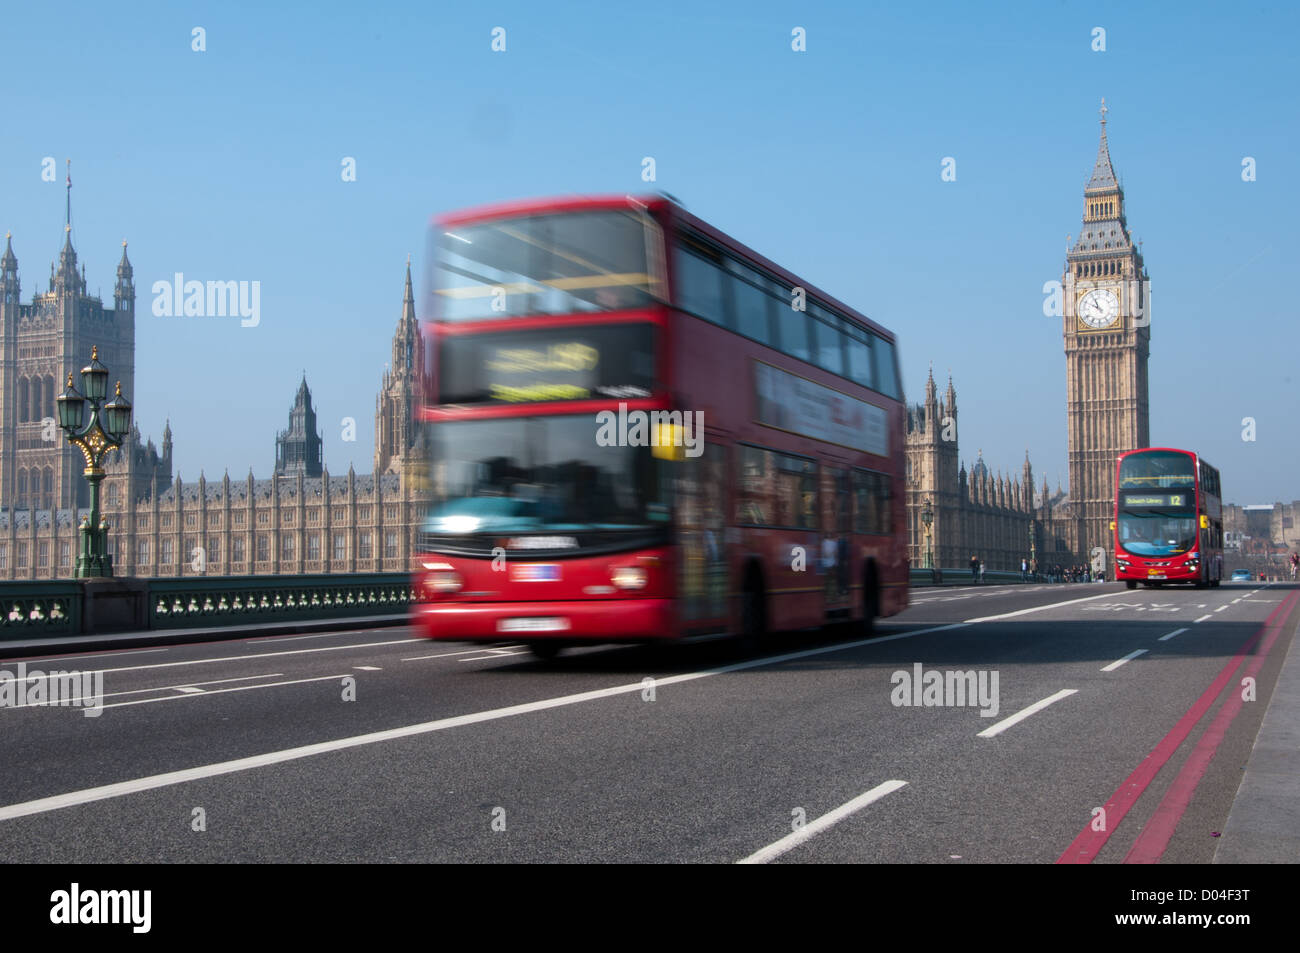 Red London bus se déplaçant dans Westminster Bridge. Bus a motion blur à ajouter à la circulation, les Maisons du Parlement dans l'image Banque D'Images